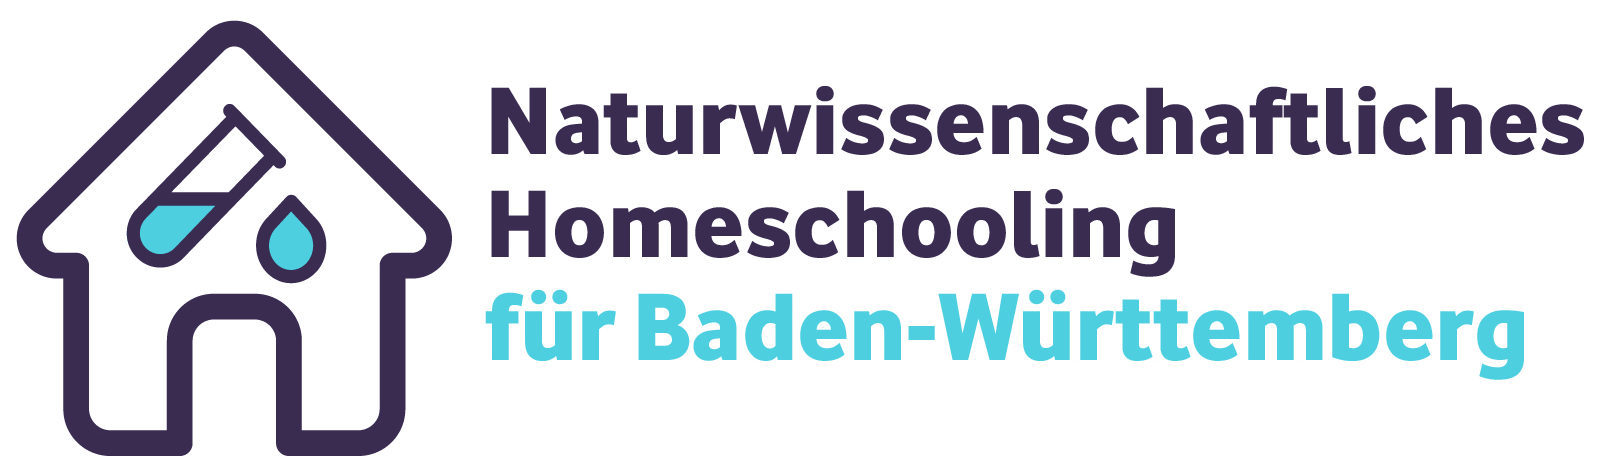 Naturwissenschaftliches Homeschooling für Baden Württemberg